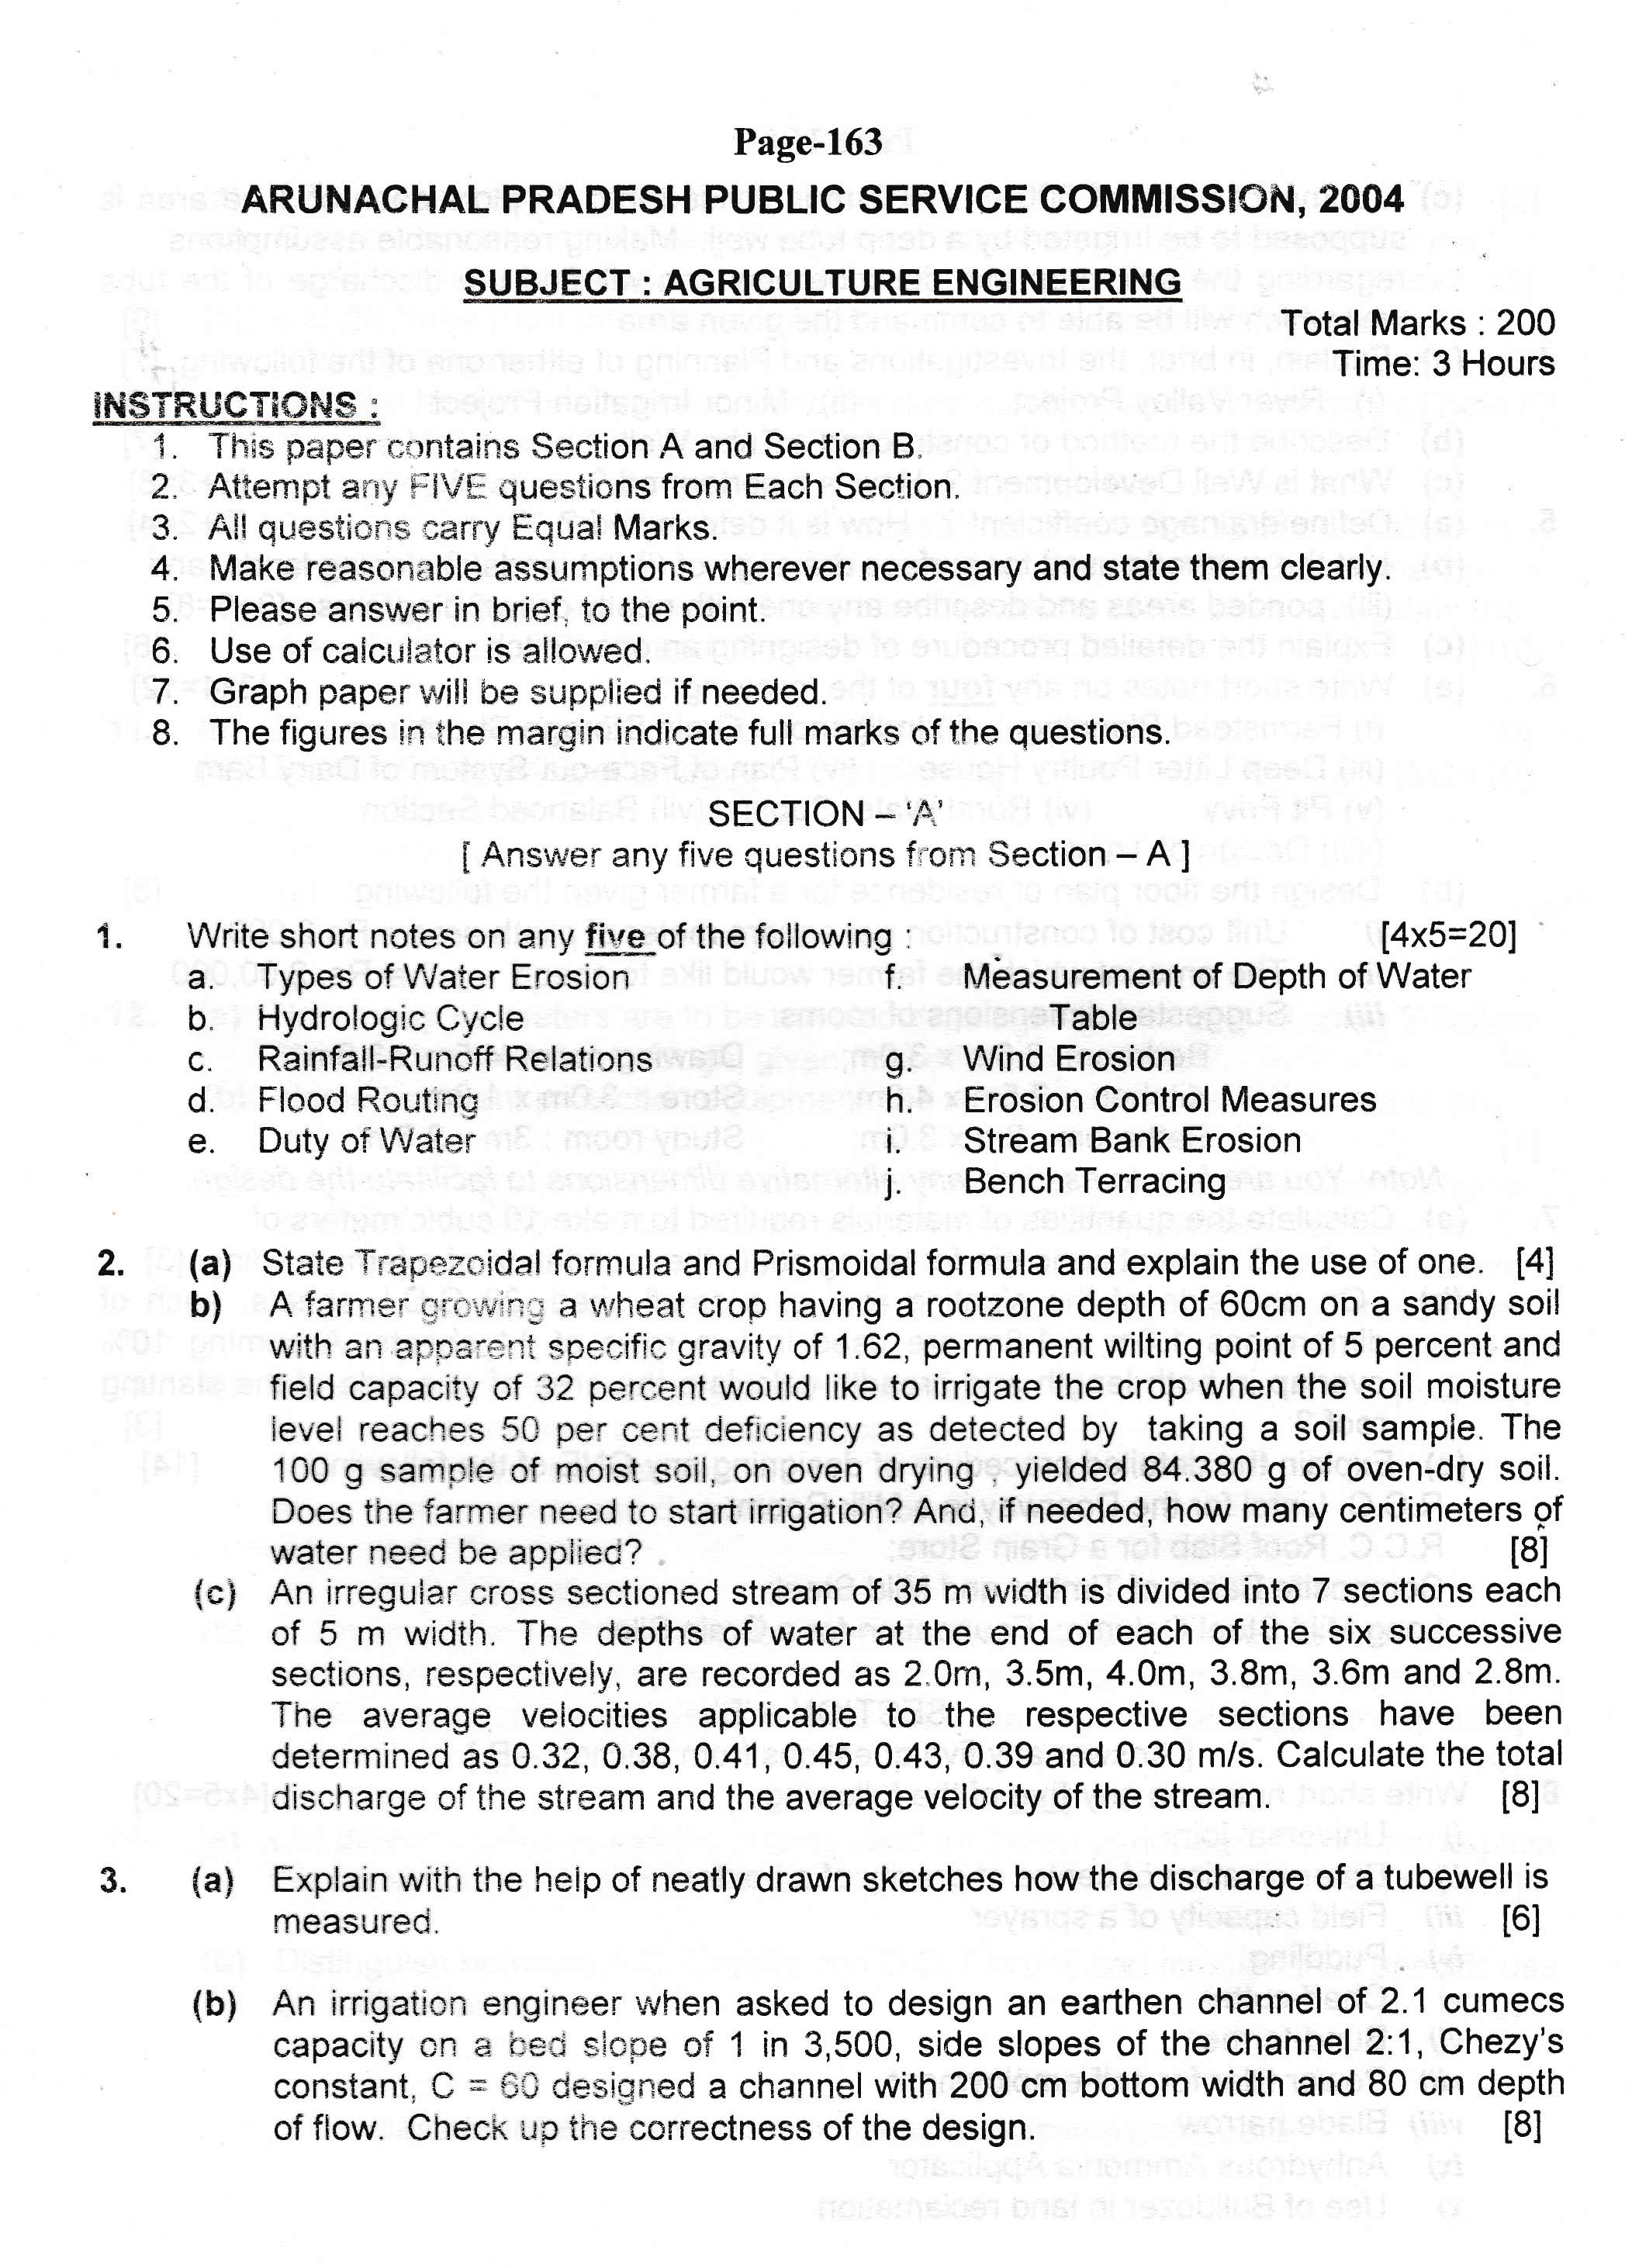 APPSC AE Civil Exam 2004 Agriculture Engineering 1